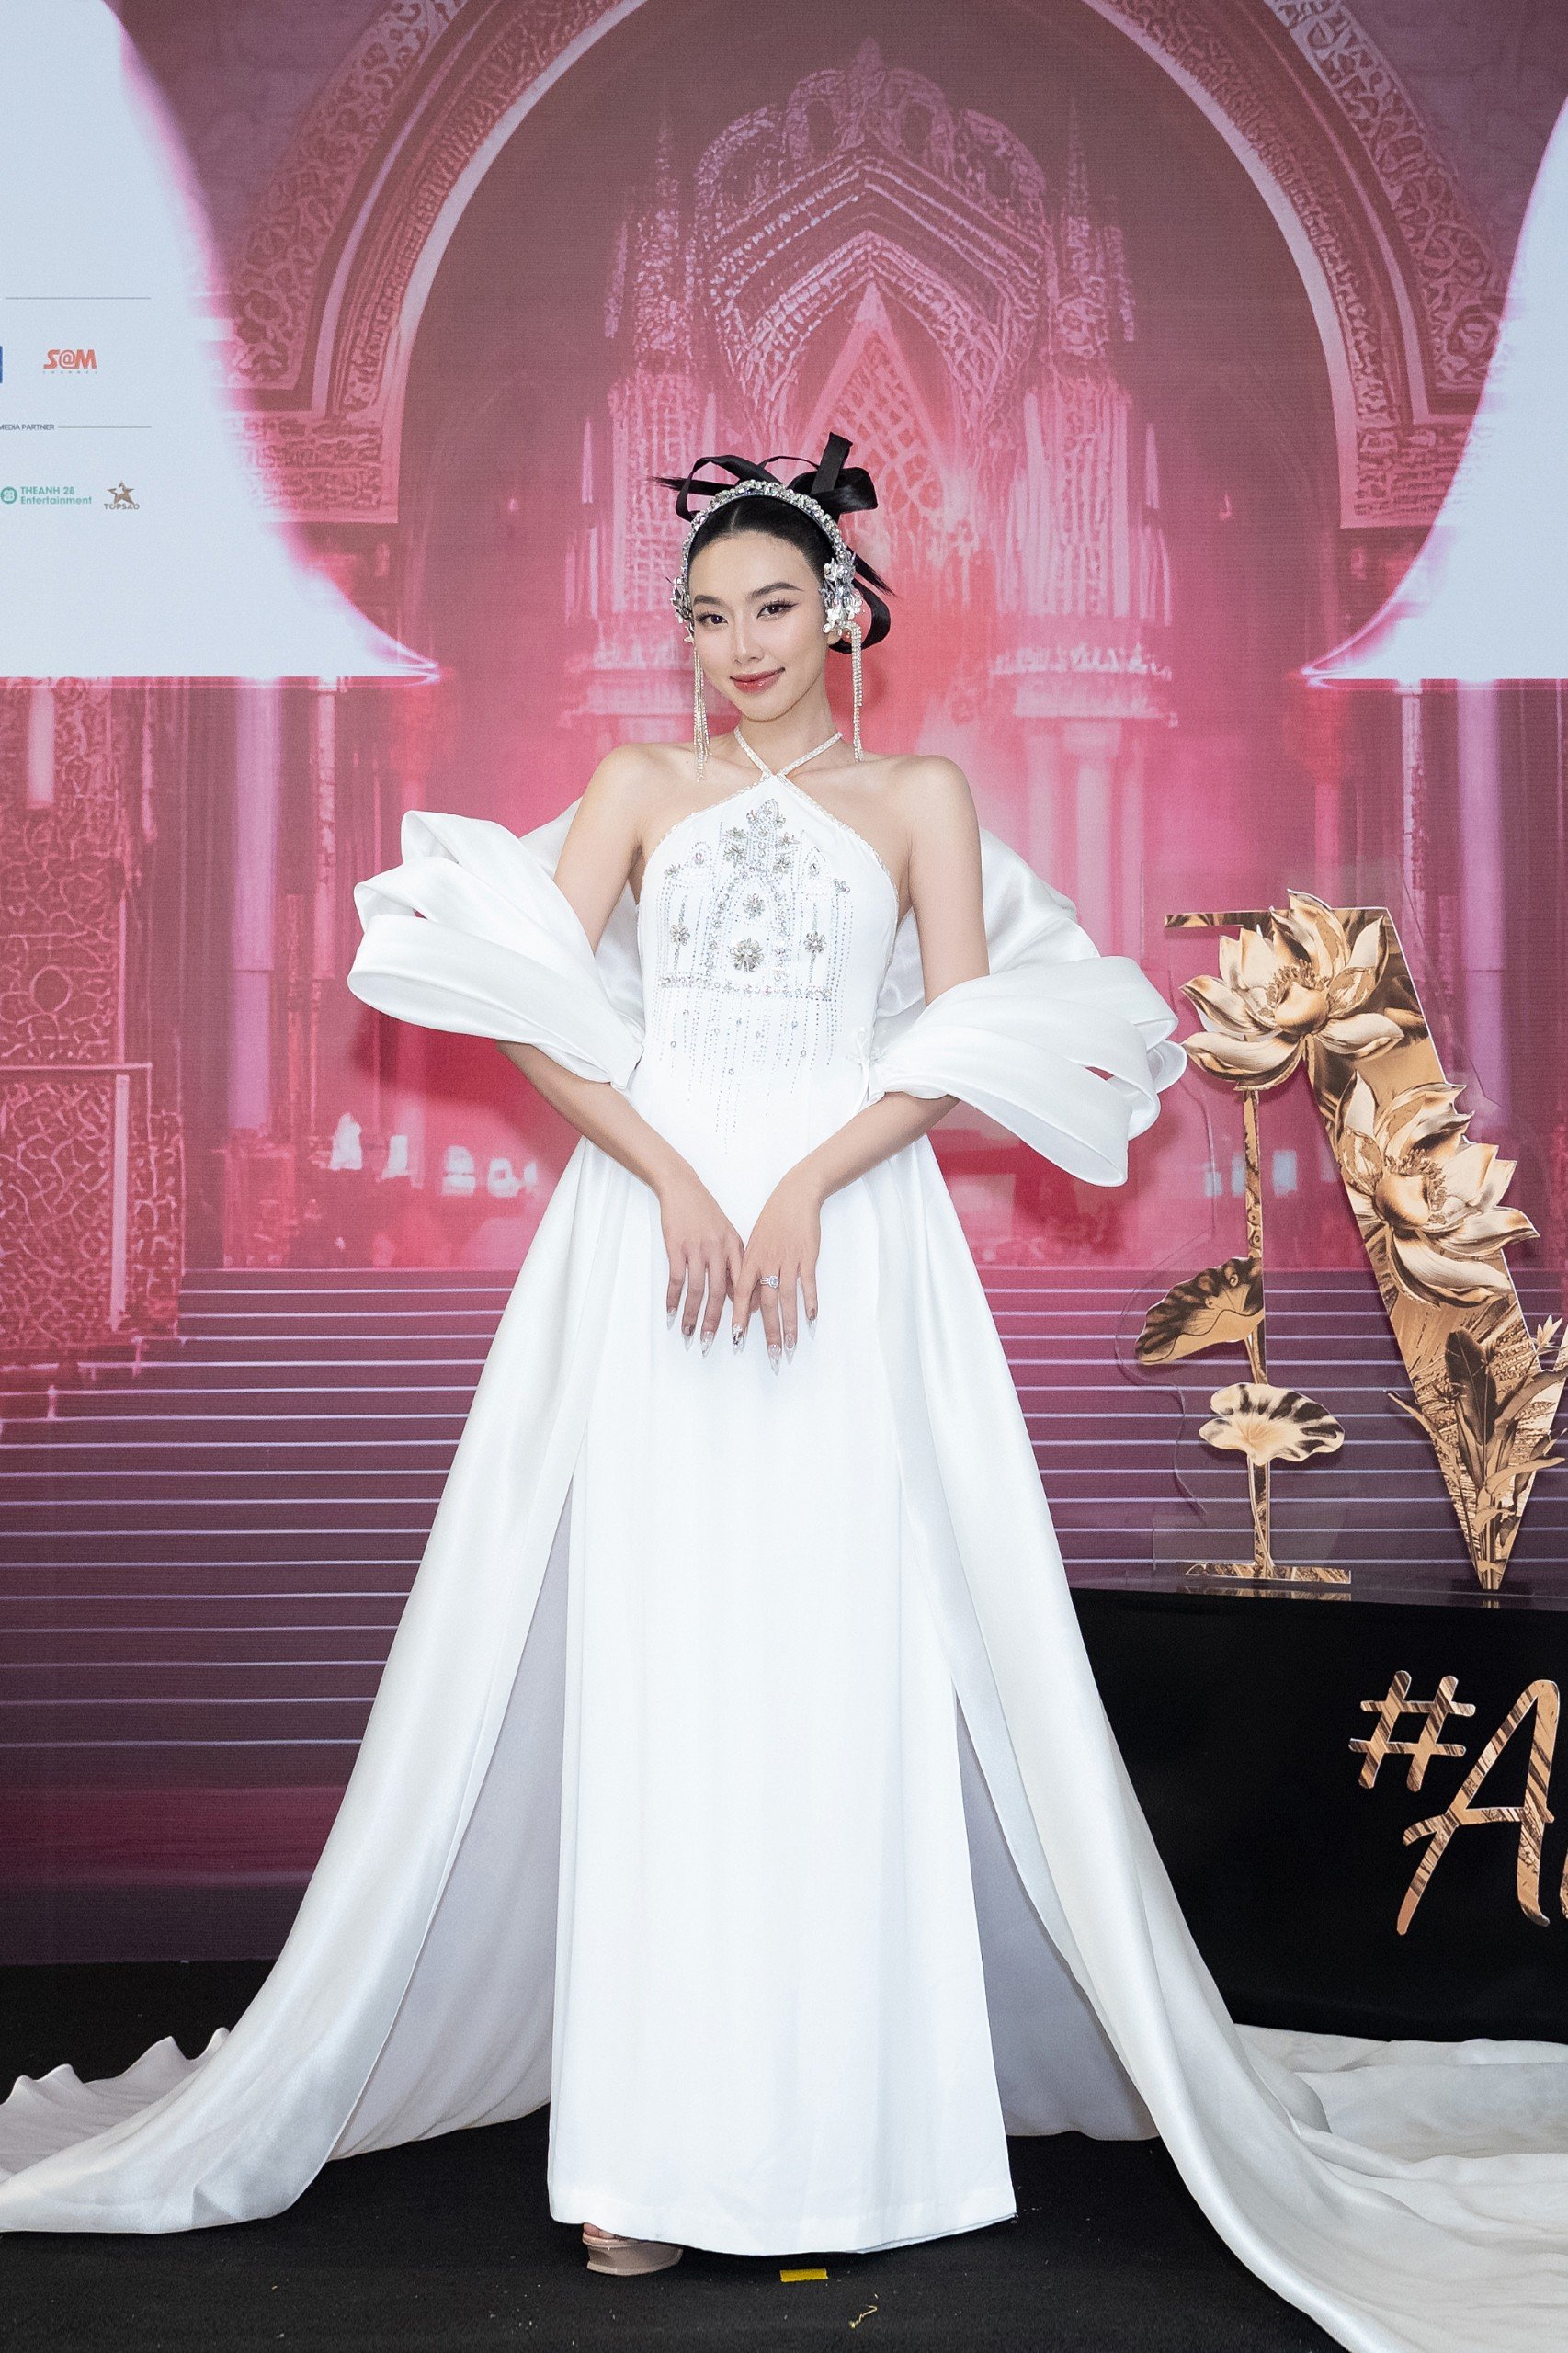 Hoa hậu Thùy Tiên kiều diễm, thanh lịch trong sắc trắng. Tạo hình của cô được nhiều fan nhận xét giống Hằng Nga